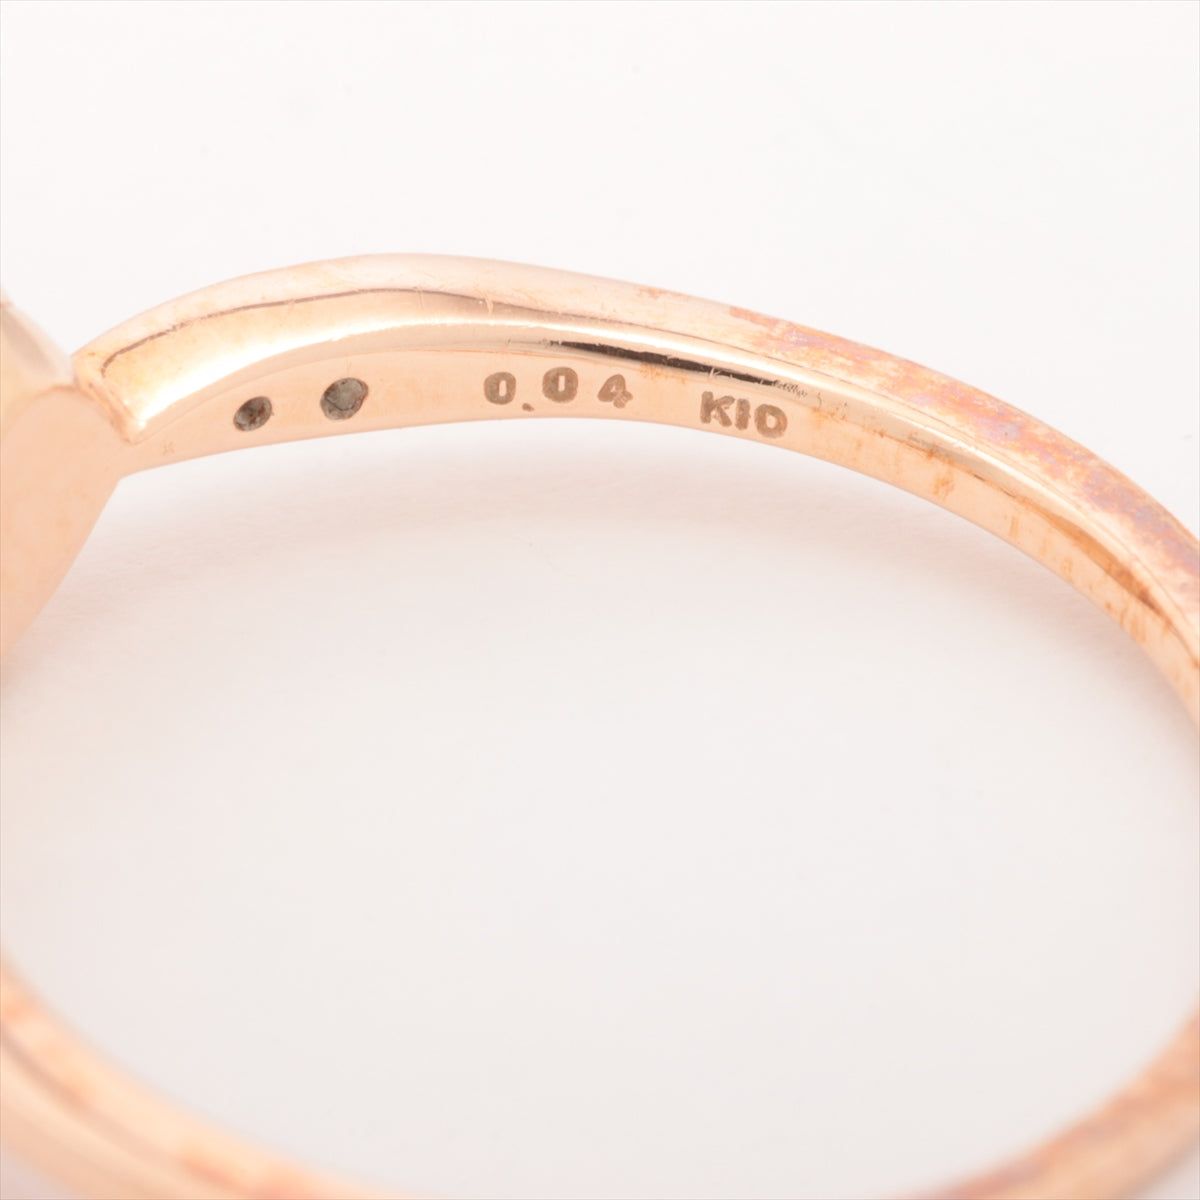 Agat Pearl Diamond Ring K10 (PG) 1.4g 0.04 E